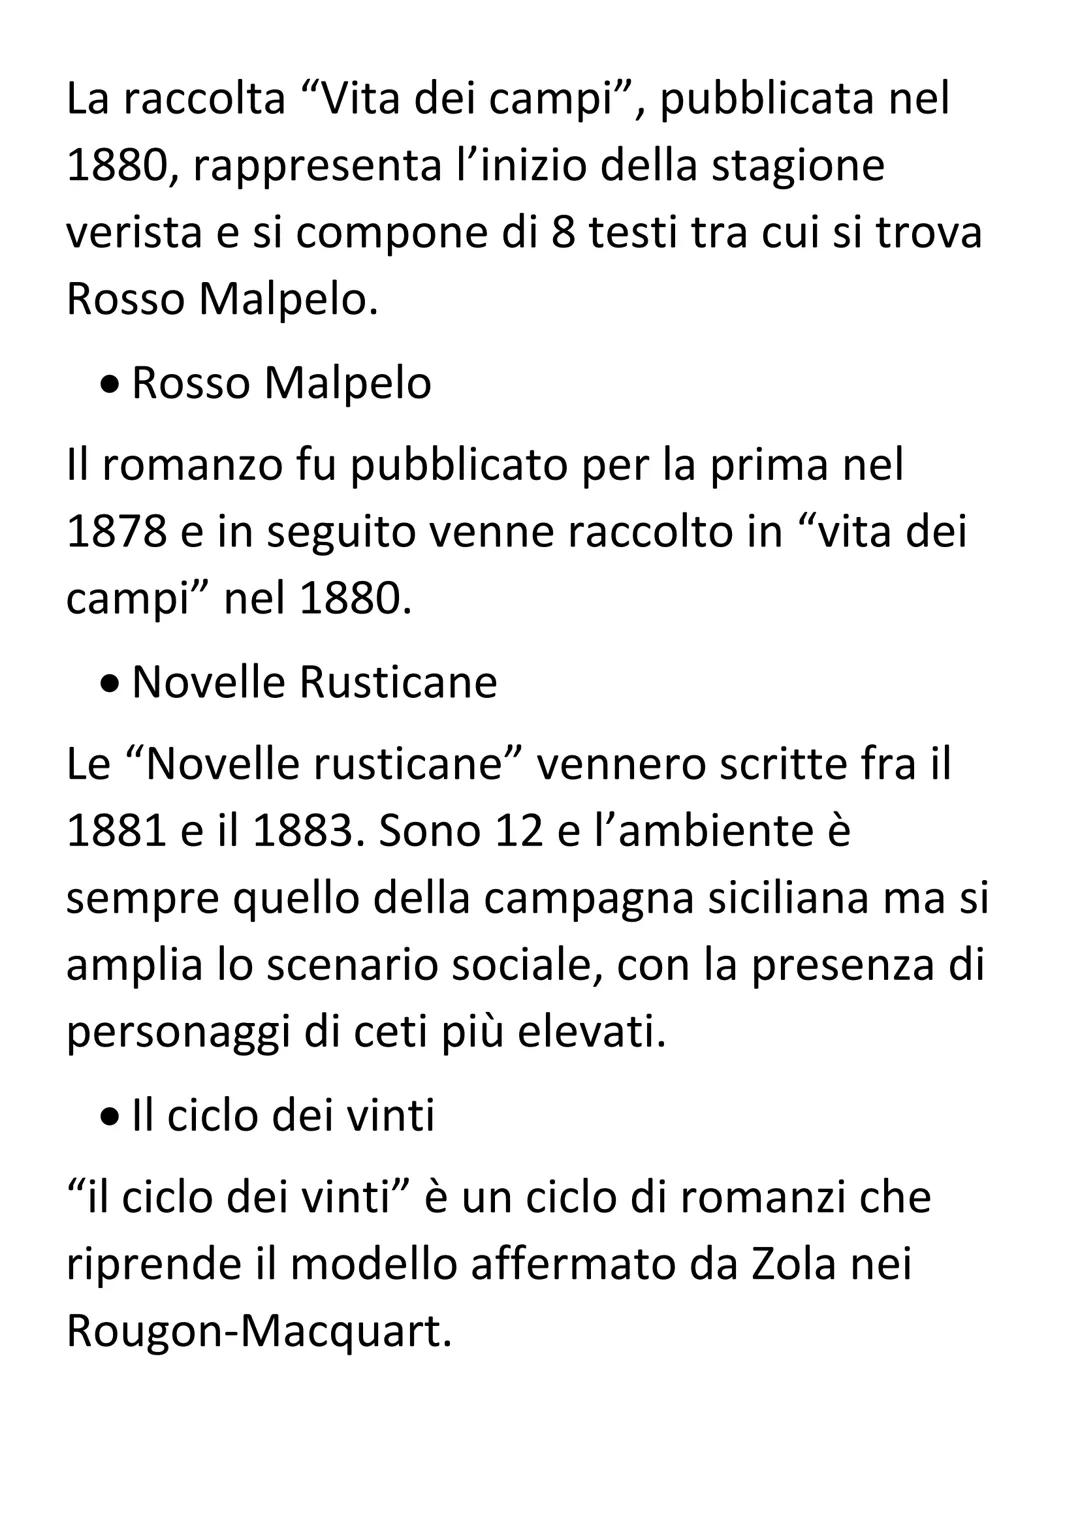 Giovanni Verga
Vita e opere
Giovanni Verga è tra i
narratori italiani più noti della
seconda metà dell'800. Fu
autore di romanzi, novelle e
